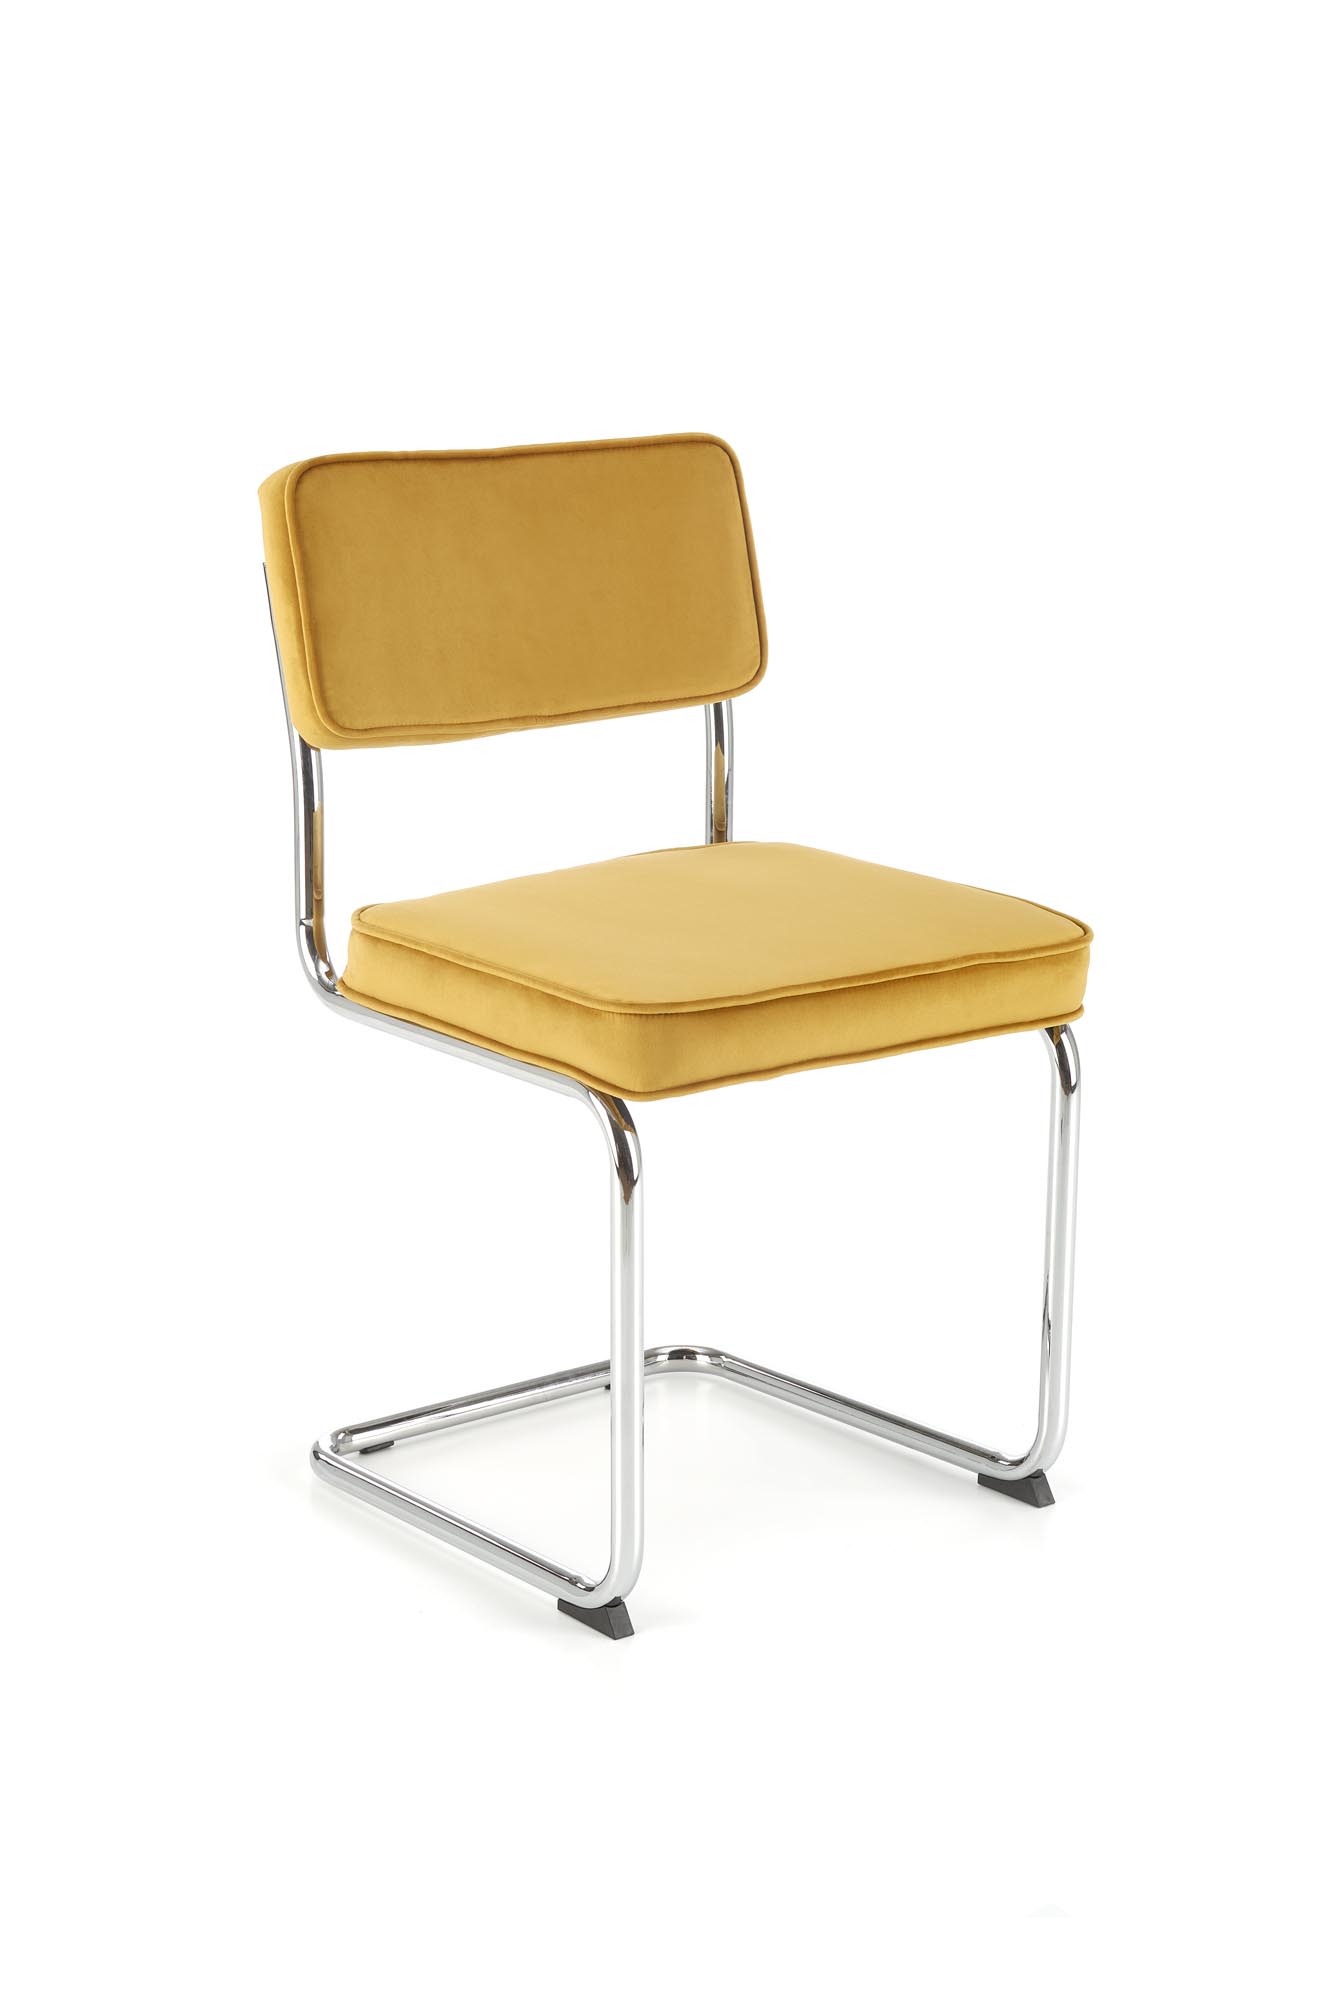 K510 Stolička horčicová krzeszlo kovové k510 - horčicová